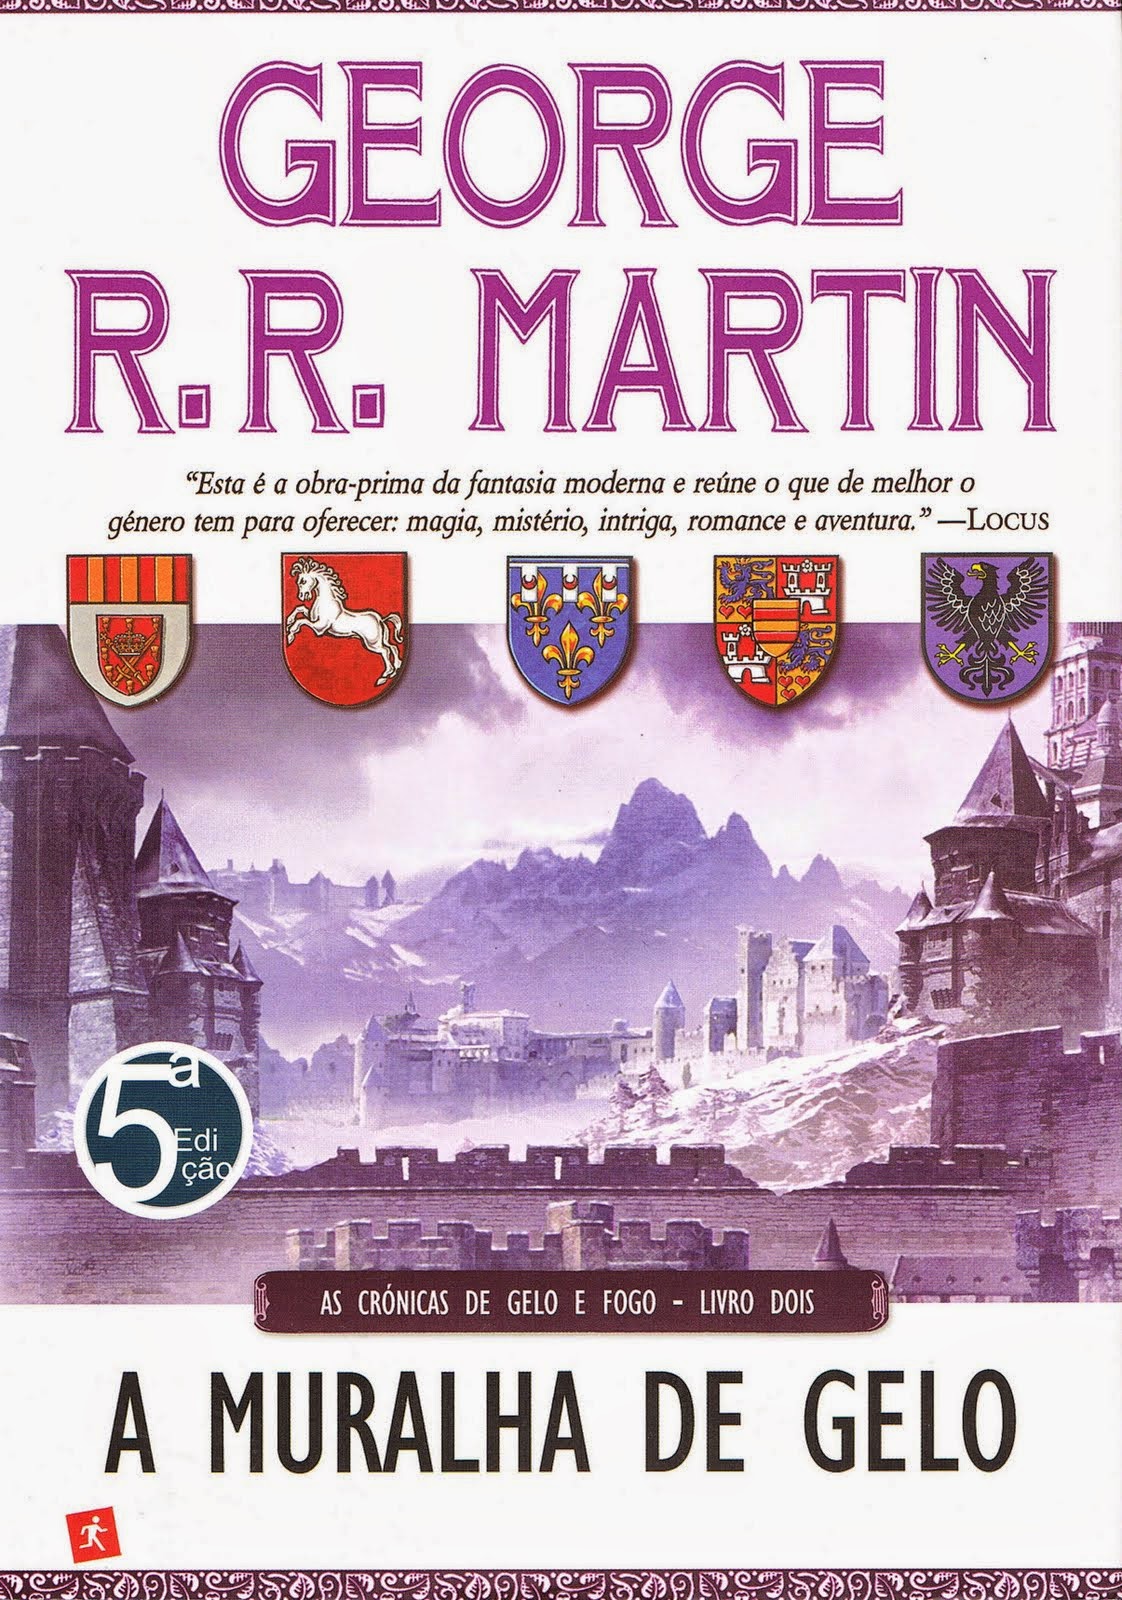 A Guerra dos Tronos de George R. R. Martin; Tradução: Jorge Candeias -  Livro - WOOK